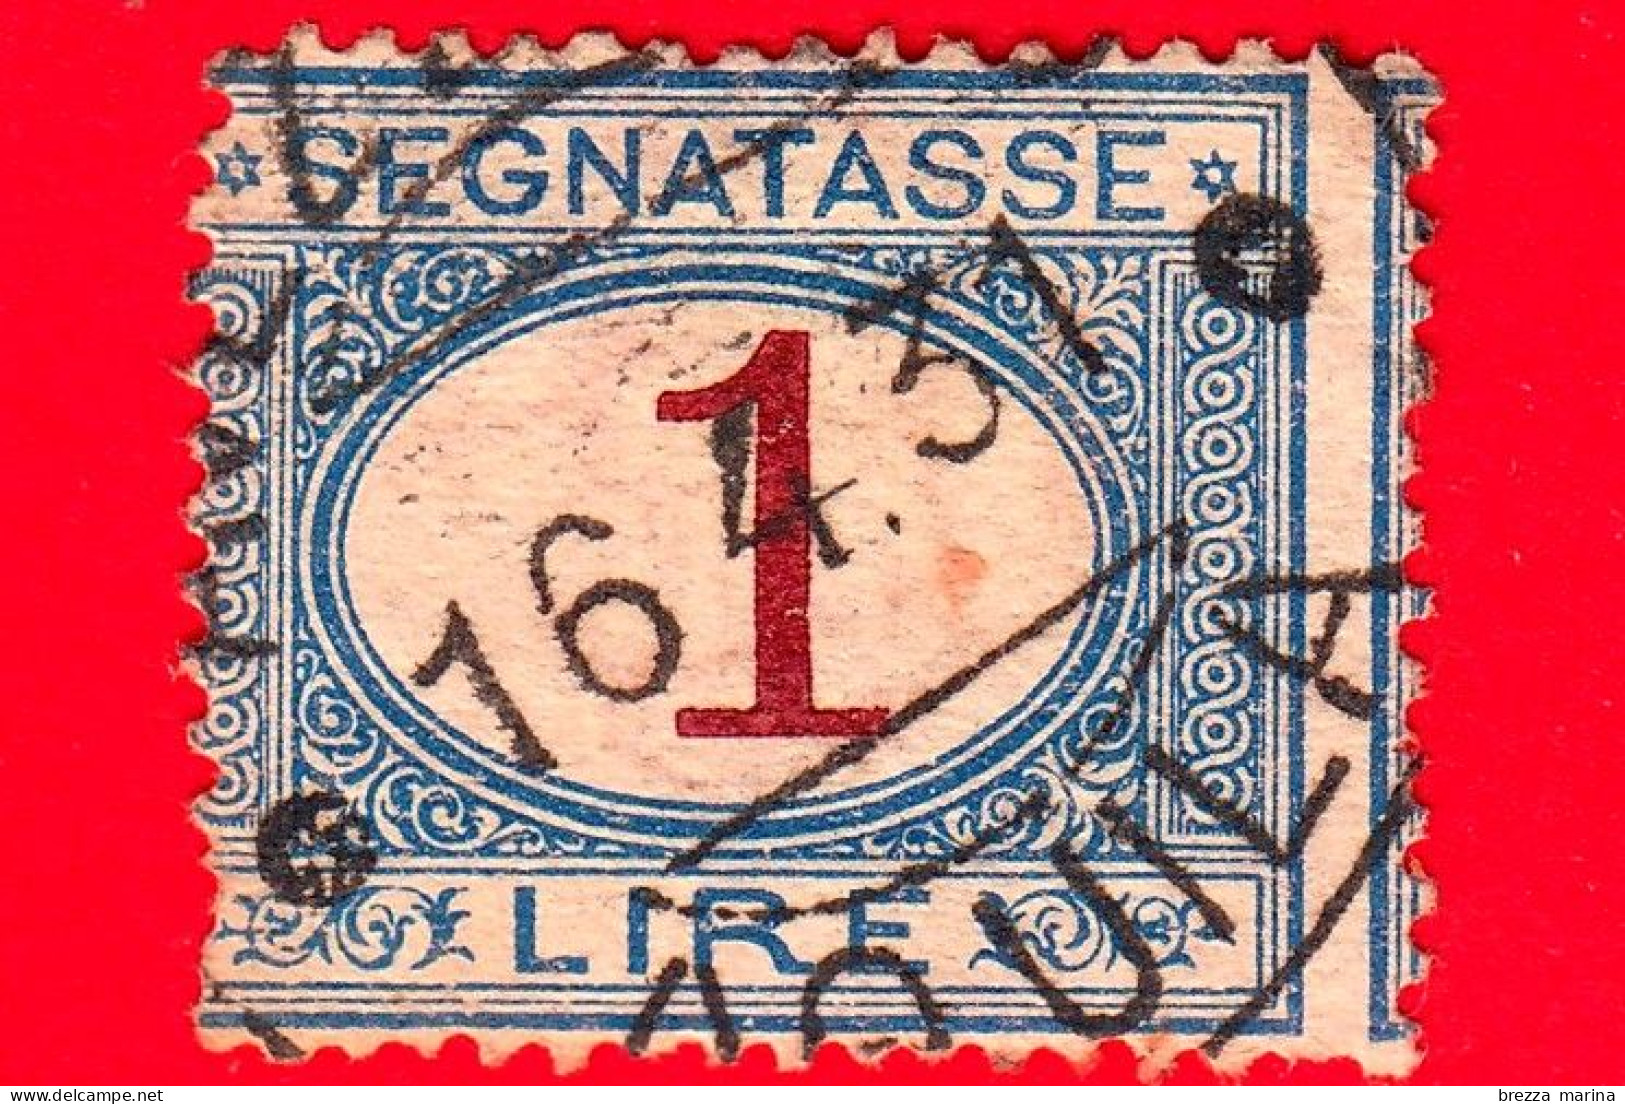 REGNO D'ITALIA - Usato - 1890 - Segnatasse - Cifra Entro Un Ovale - 1 L. - Strafport